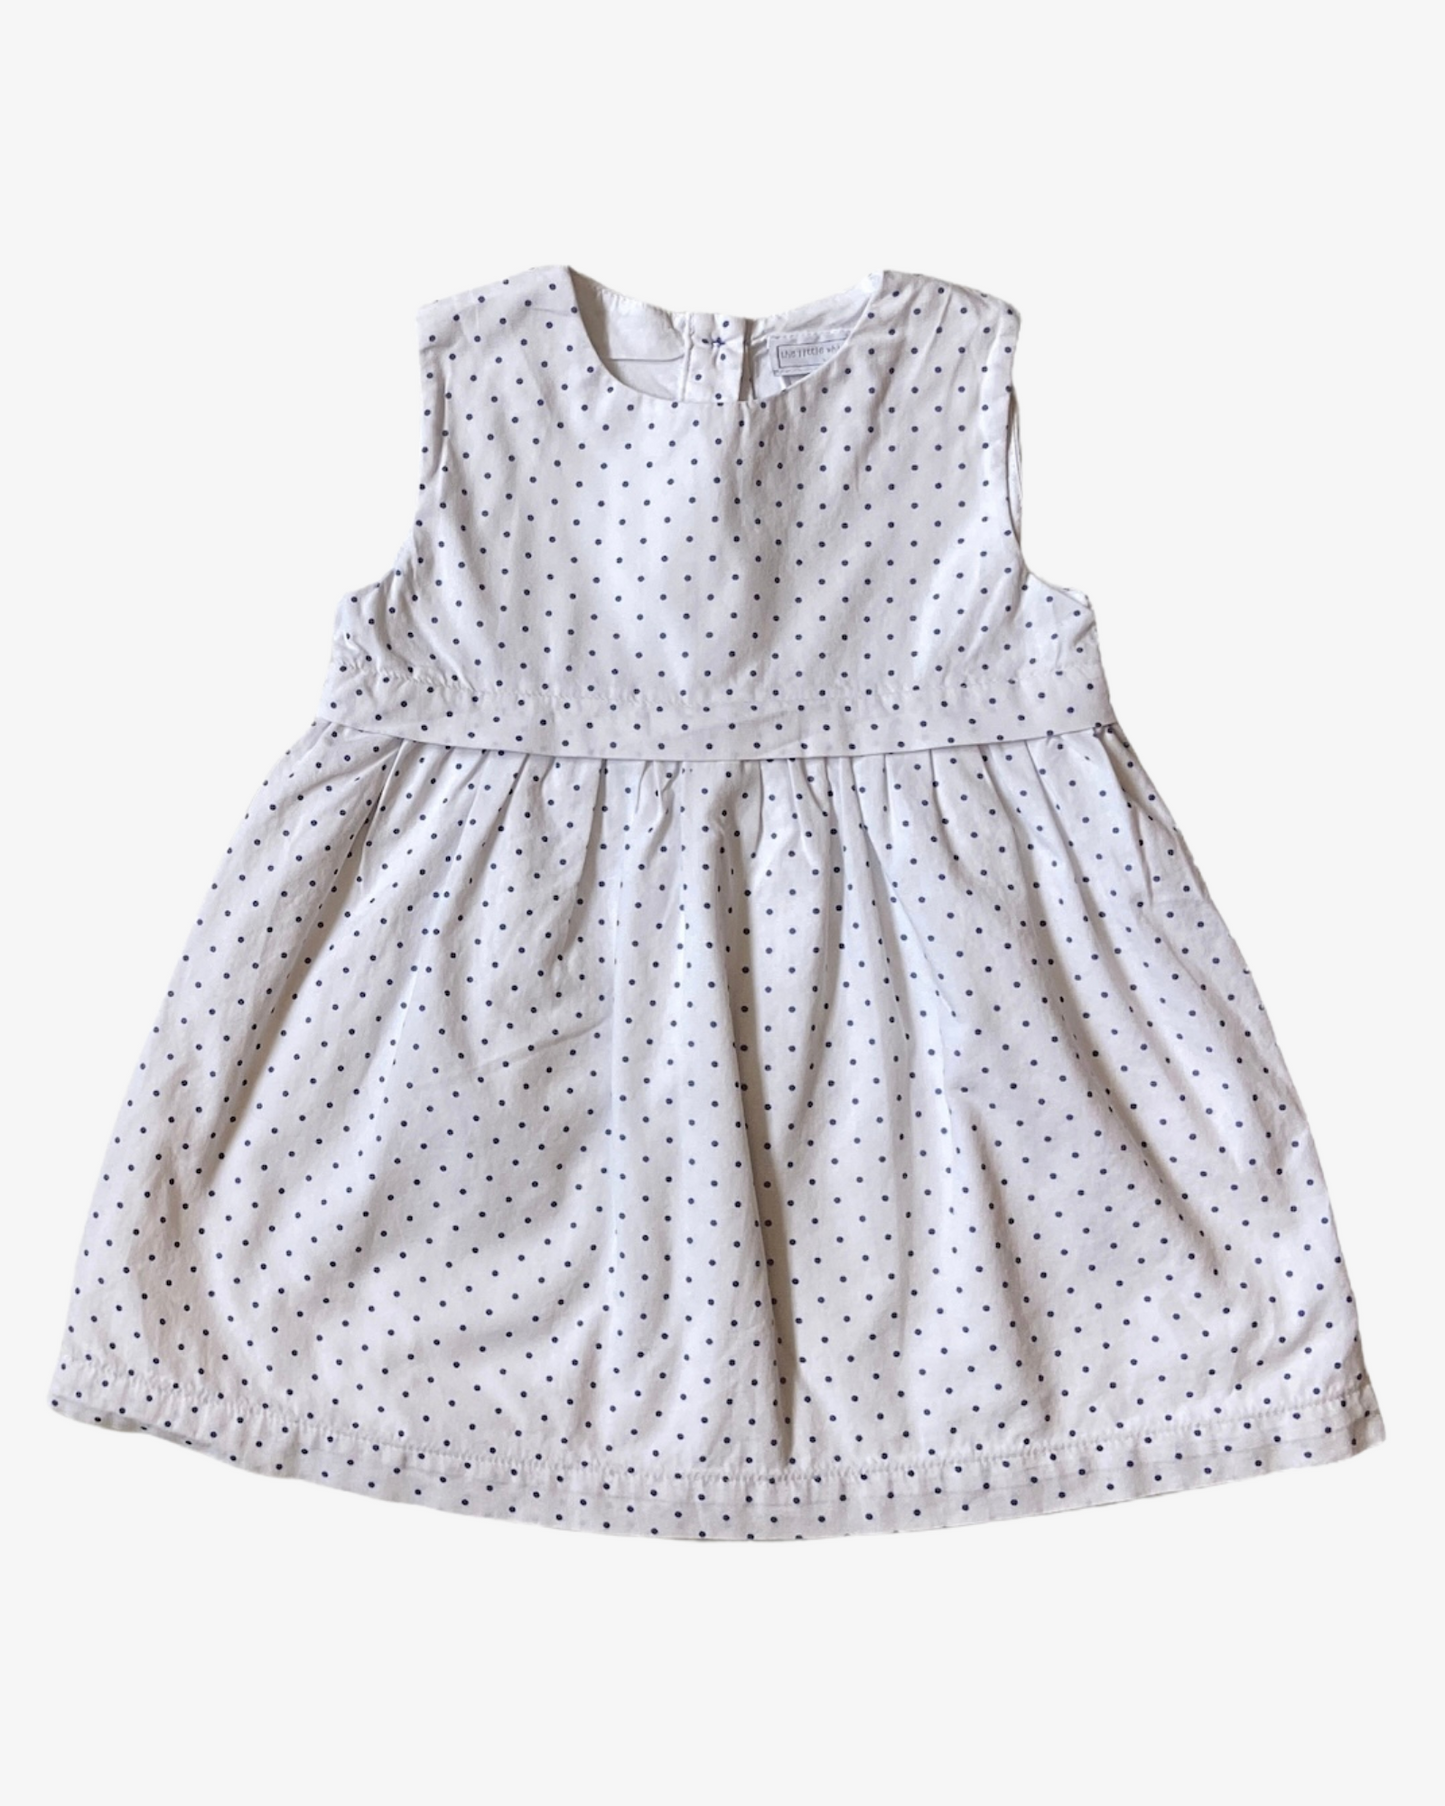 9-12 M White cotton dress